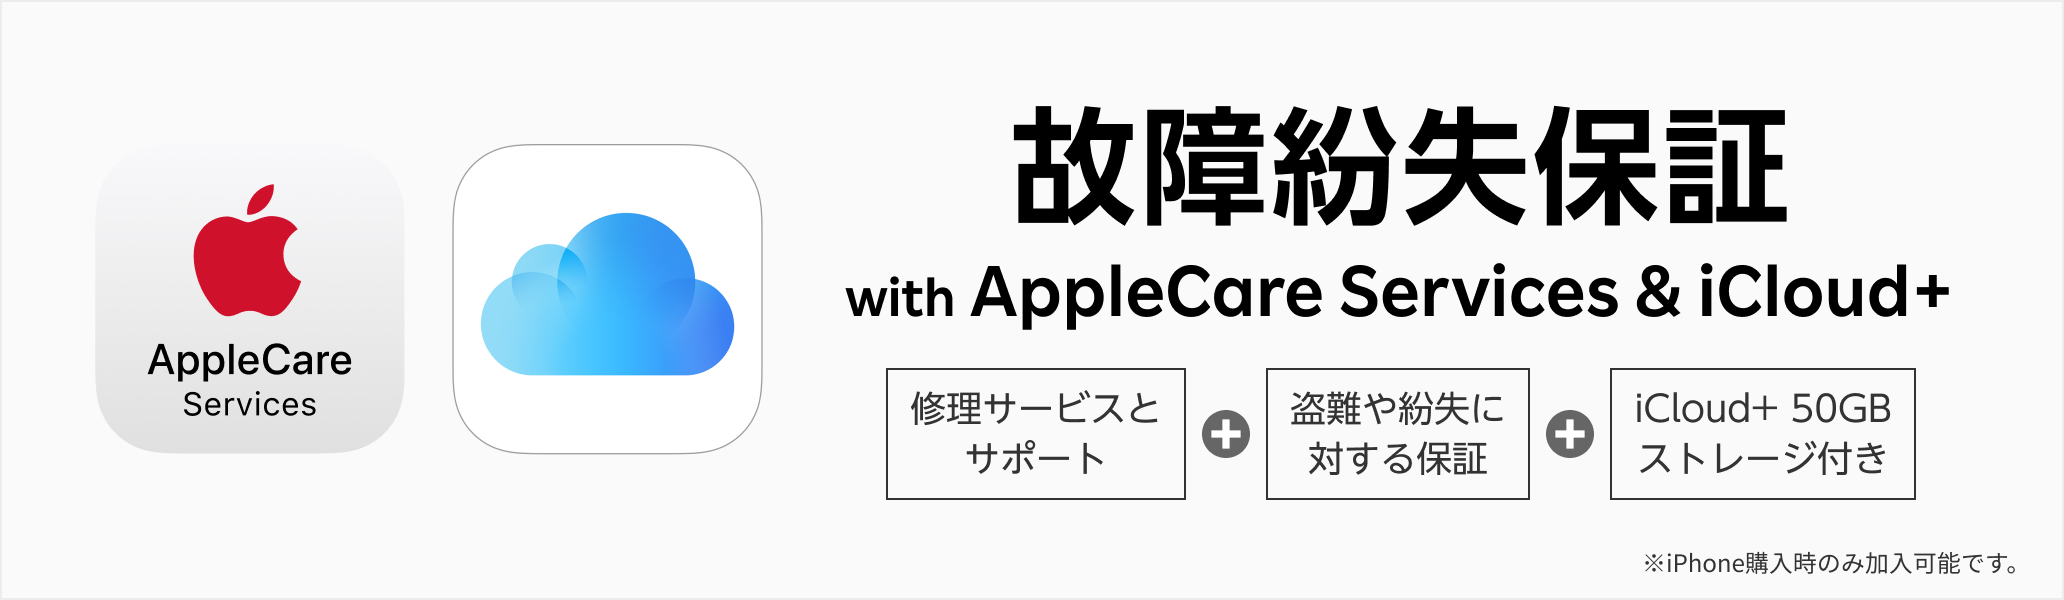 故障紛失保証 with AppleCare Services & iCloud+